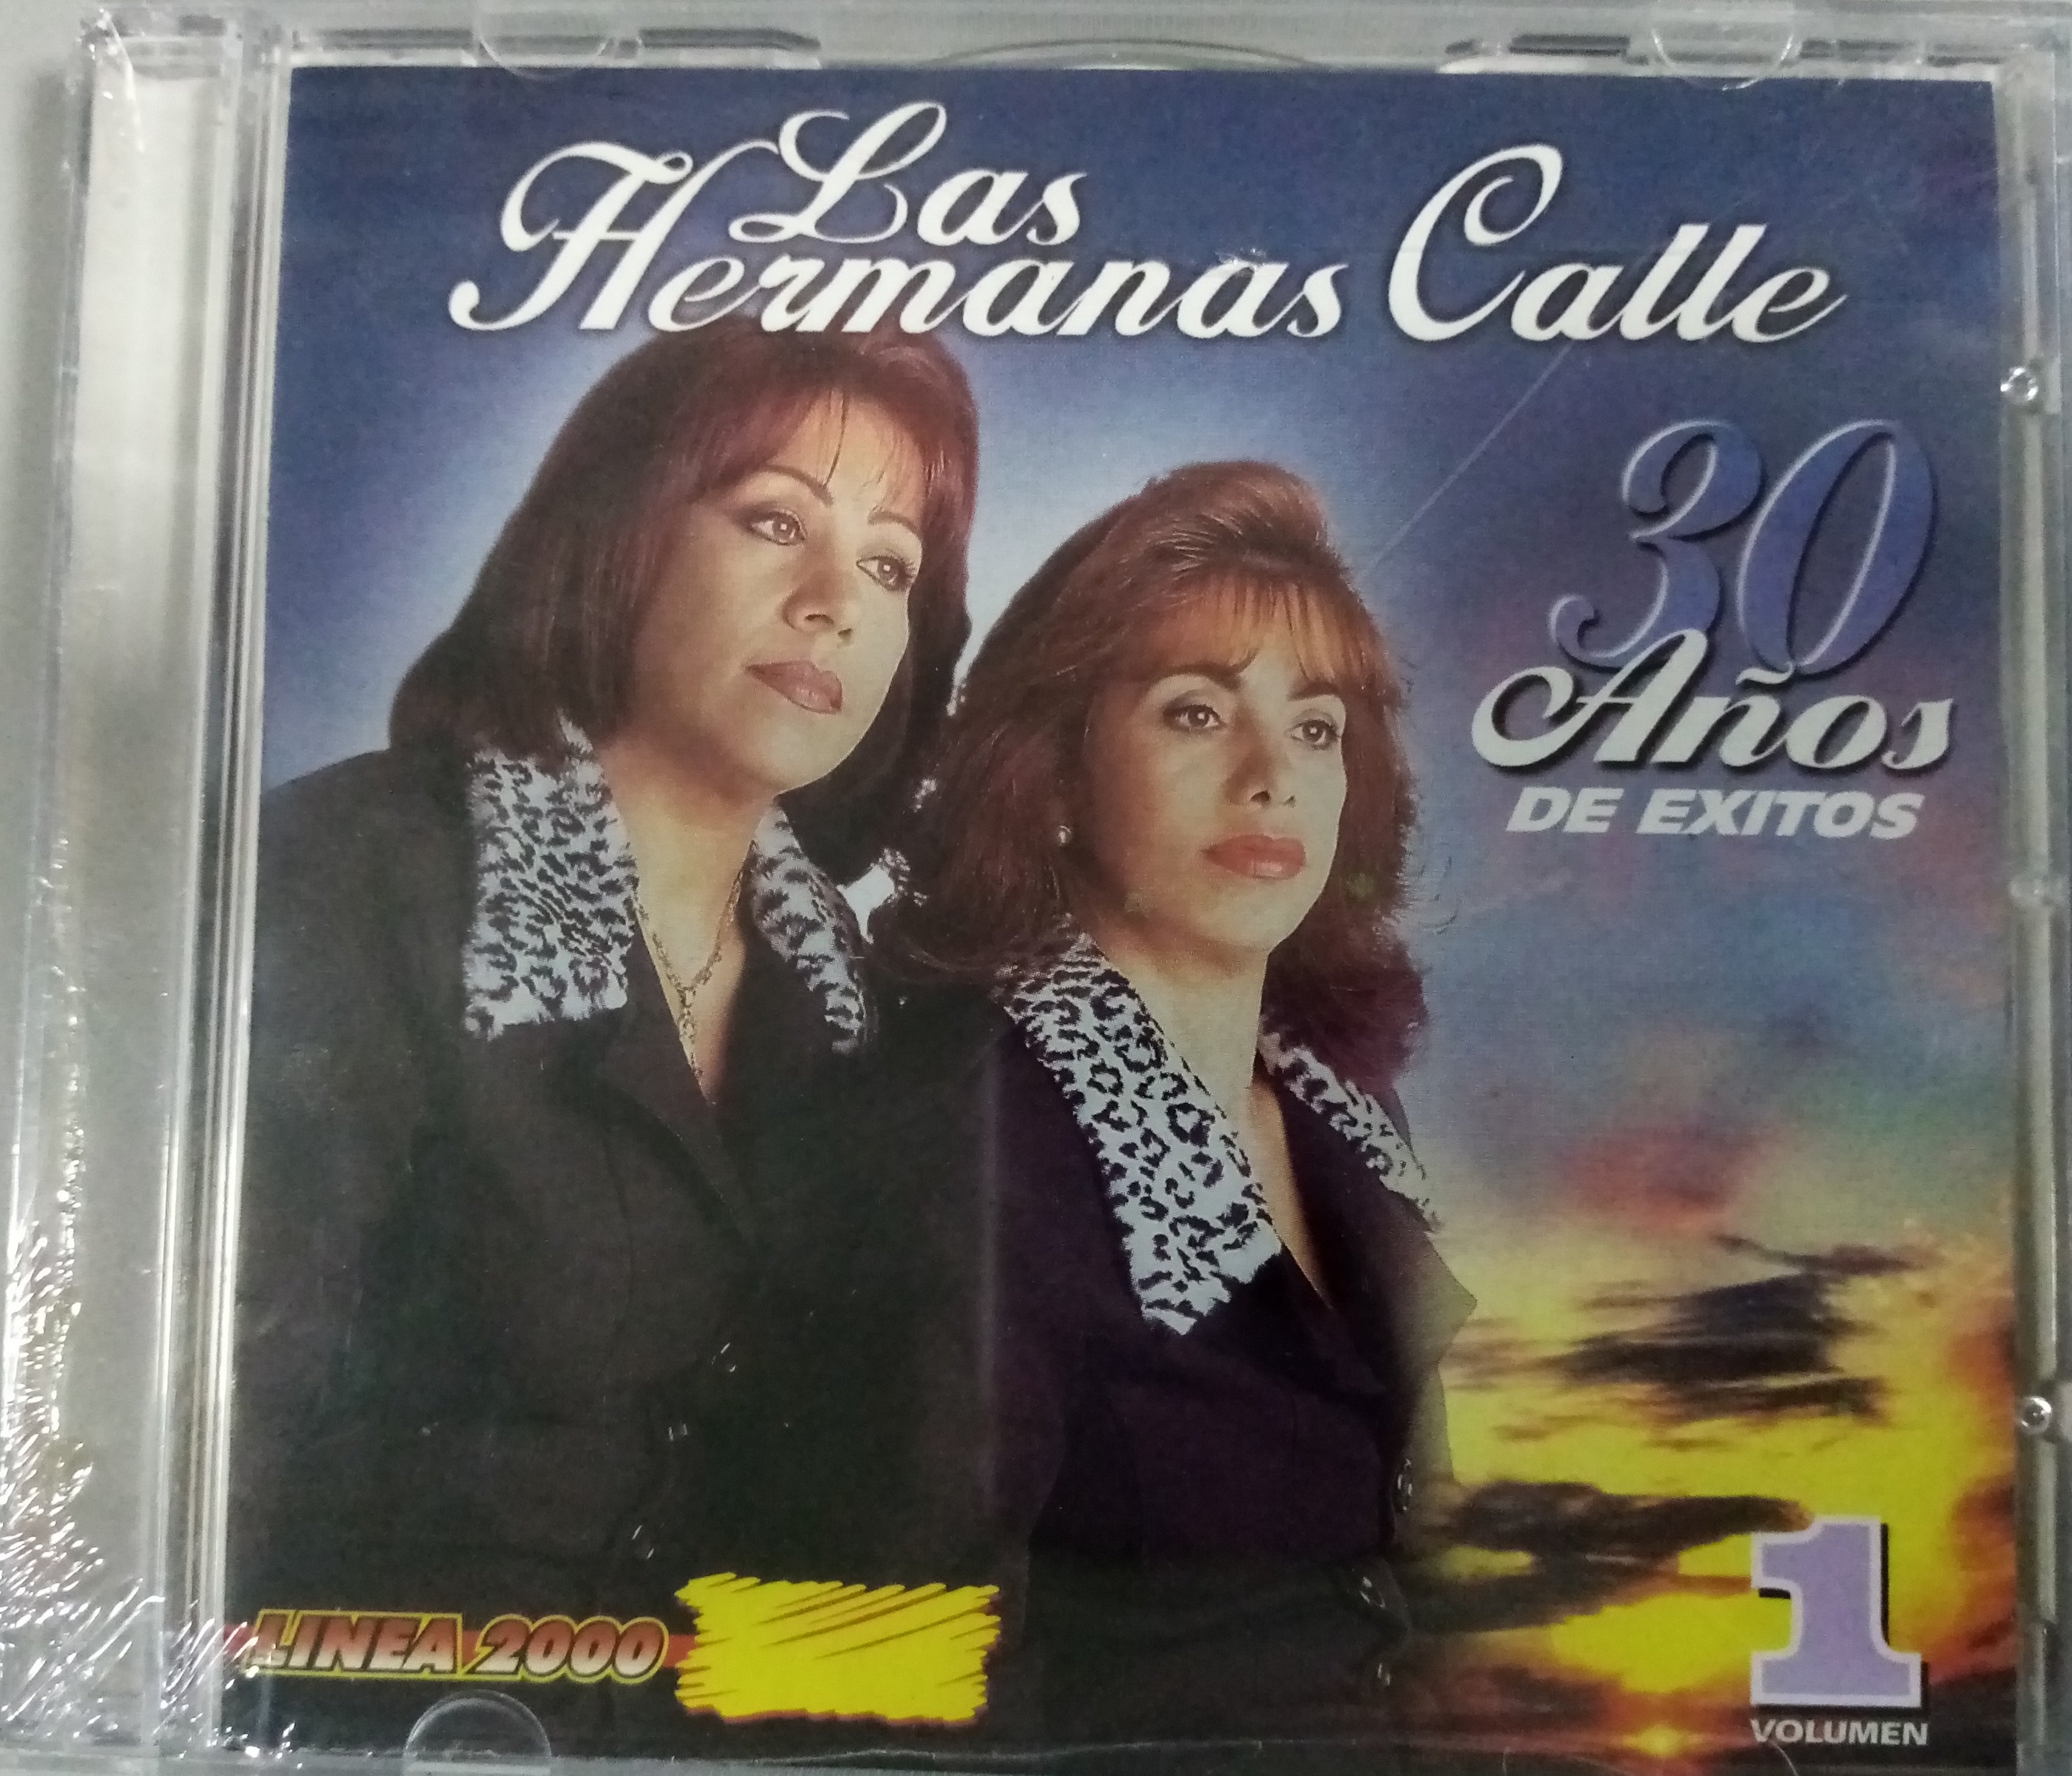  La Calle Es Tuya?: CDs y Vinilo